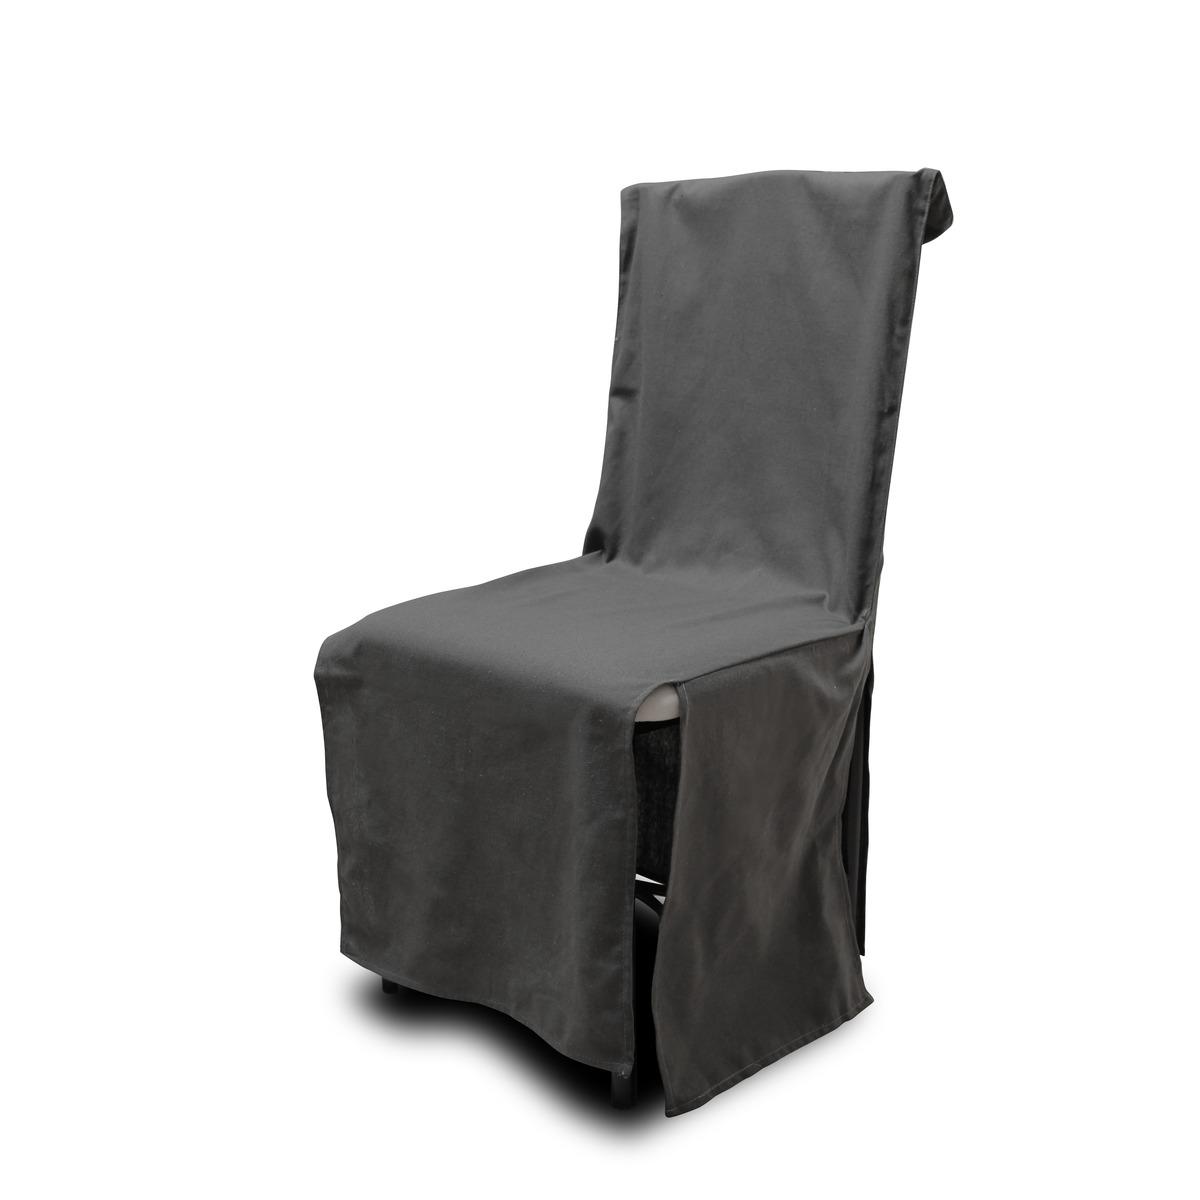 Housse de chaise en coton recyclé uni - 46 x 45 x H 105 cm - gris